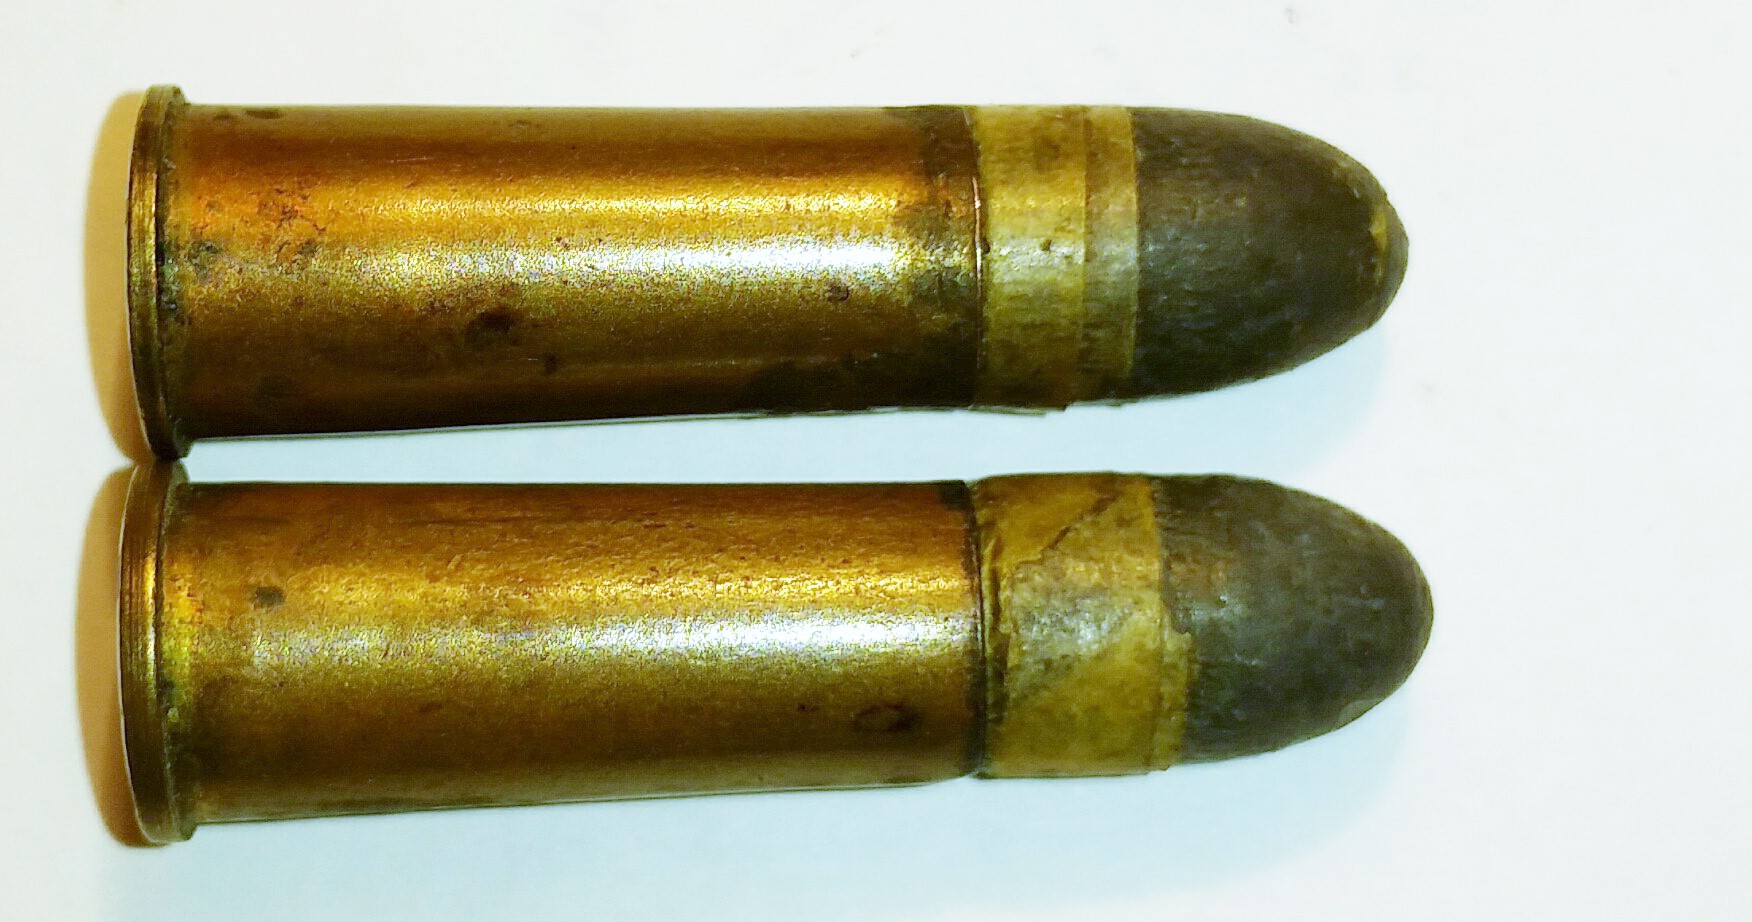 ./ammo/75NAGANT/patroner/Patron-75Nagant-RP-Blykule-x-RP-1920-1921-1.jpg